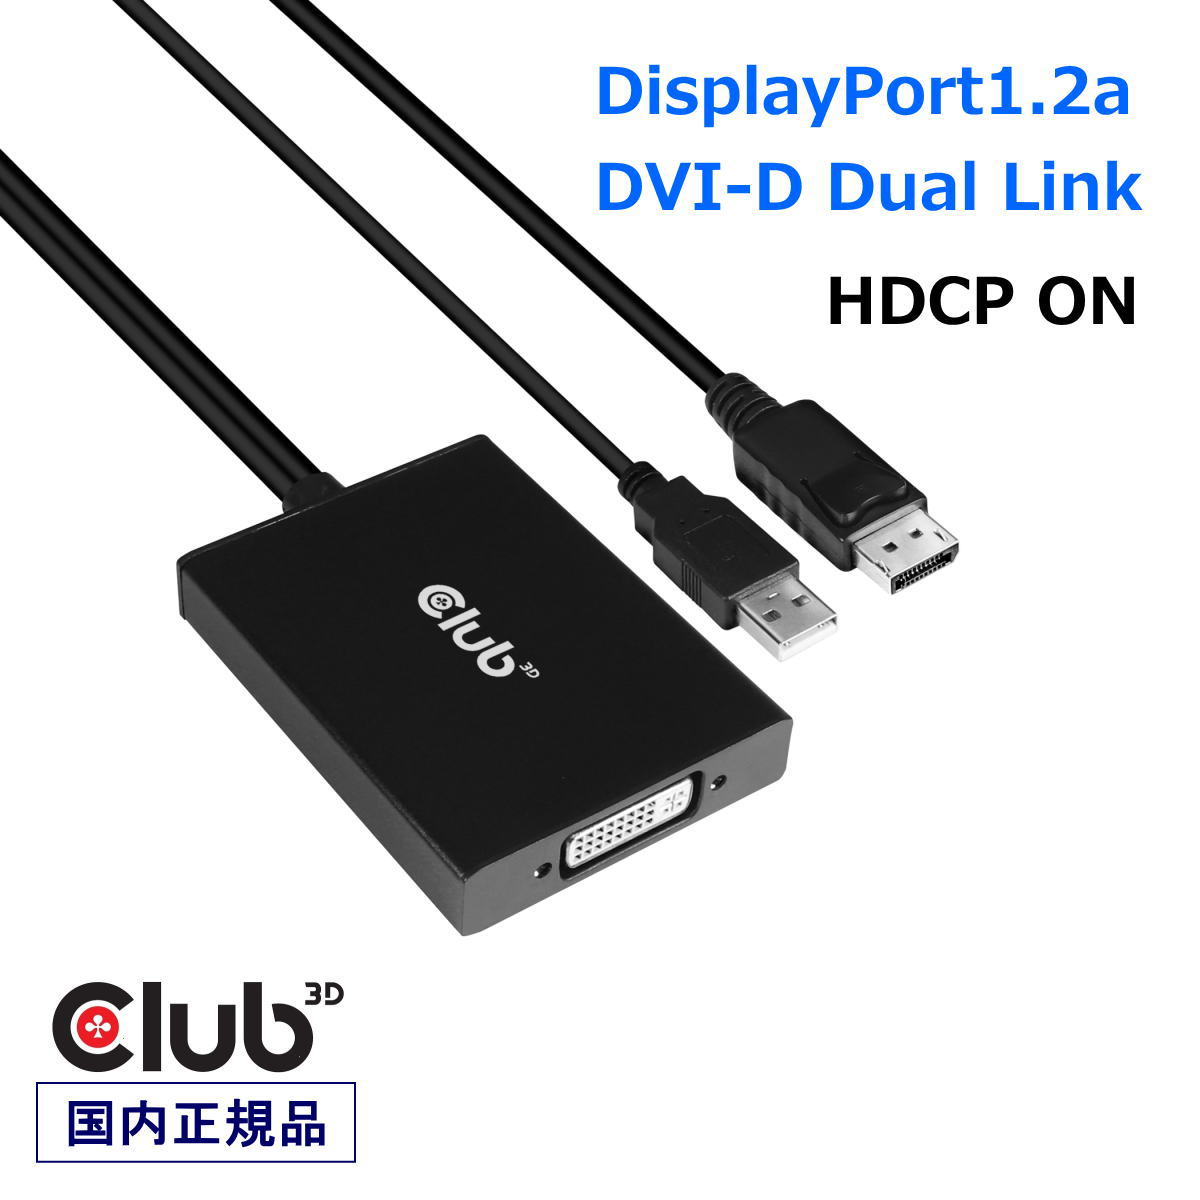 旧型モニタと最新デスクトップPCを接続するソリューション 国内正規品 Club3D DisplayPort to DVI-D DUAL LINK バージョン 購入 HDCP Active 価格は安く CAC-1010 アクティブアダプタ Adapter ON